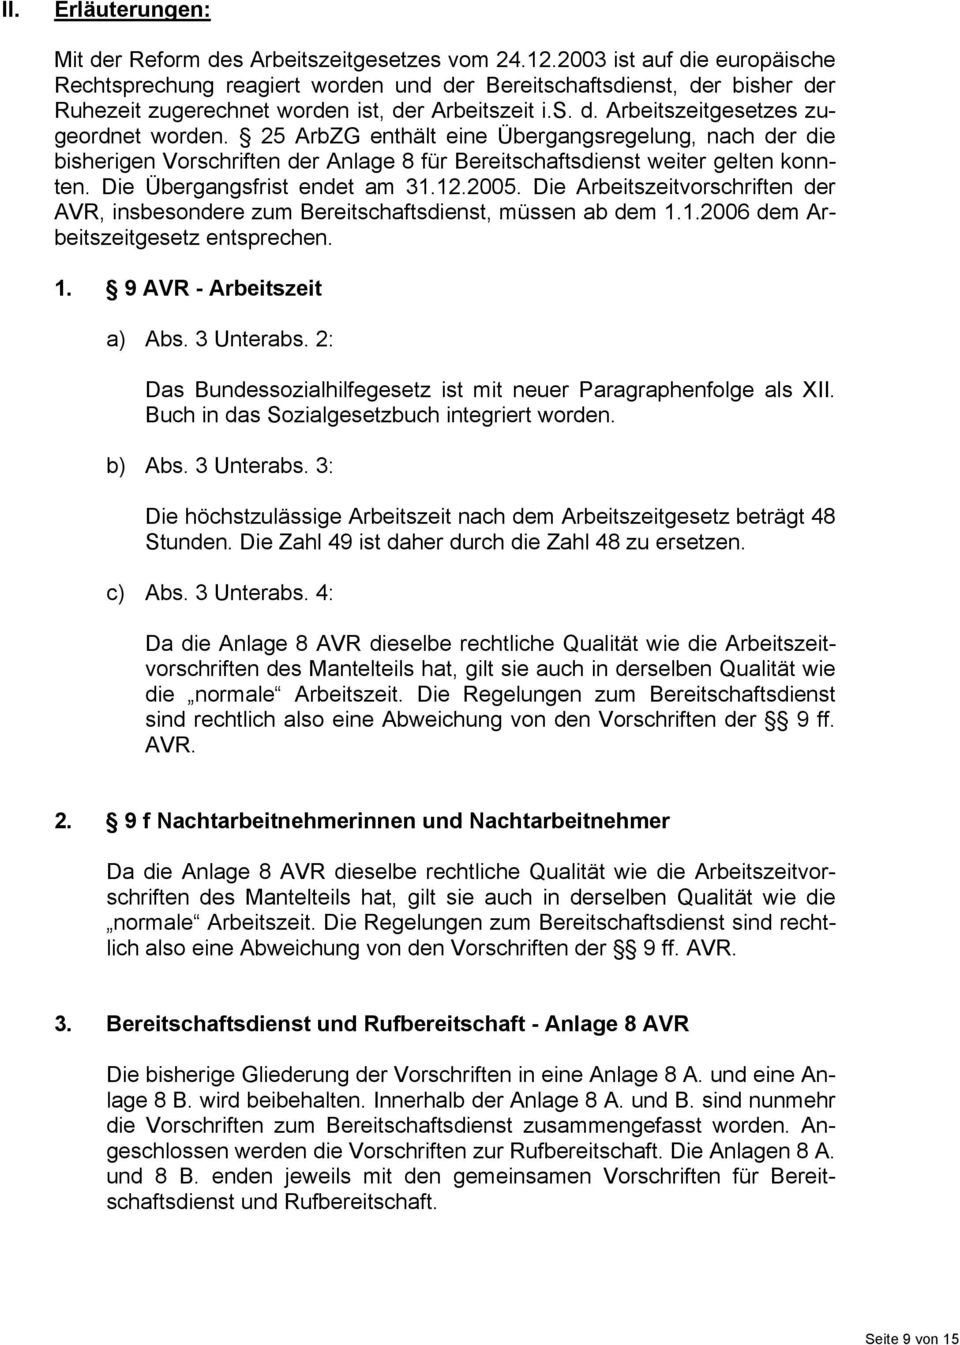 25 ArbZG enthält eine Übergangsregelung, nach der die bisherigen Vorschriften der Anlage 8 für Bereitschaftsdienst weiter gelten konnten. Die Übergangsfrist endet am 31.12.2005.